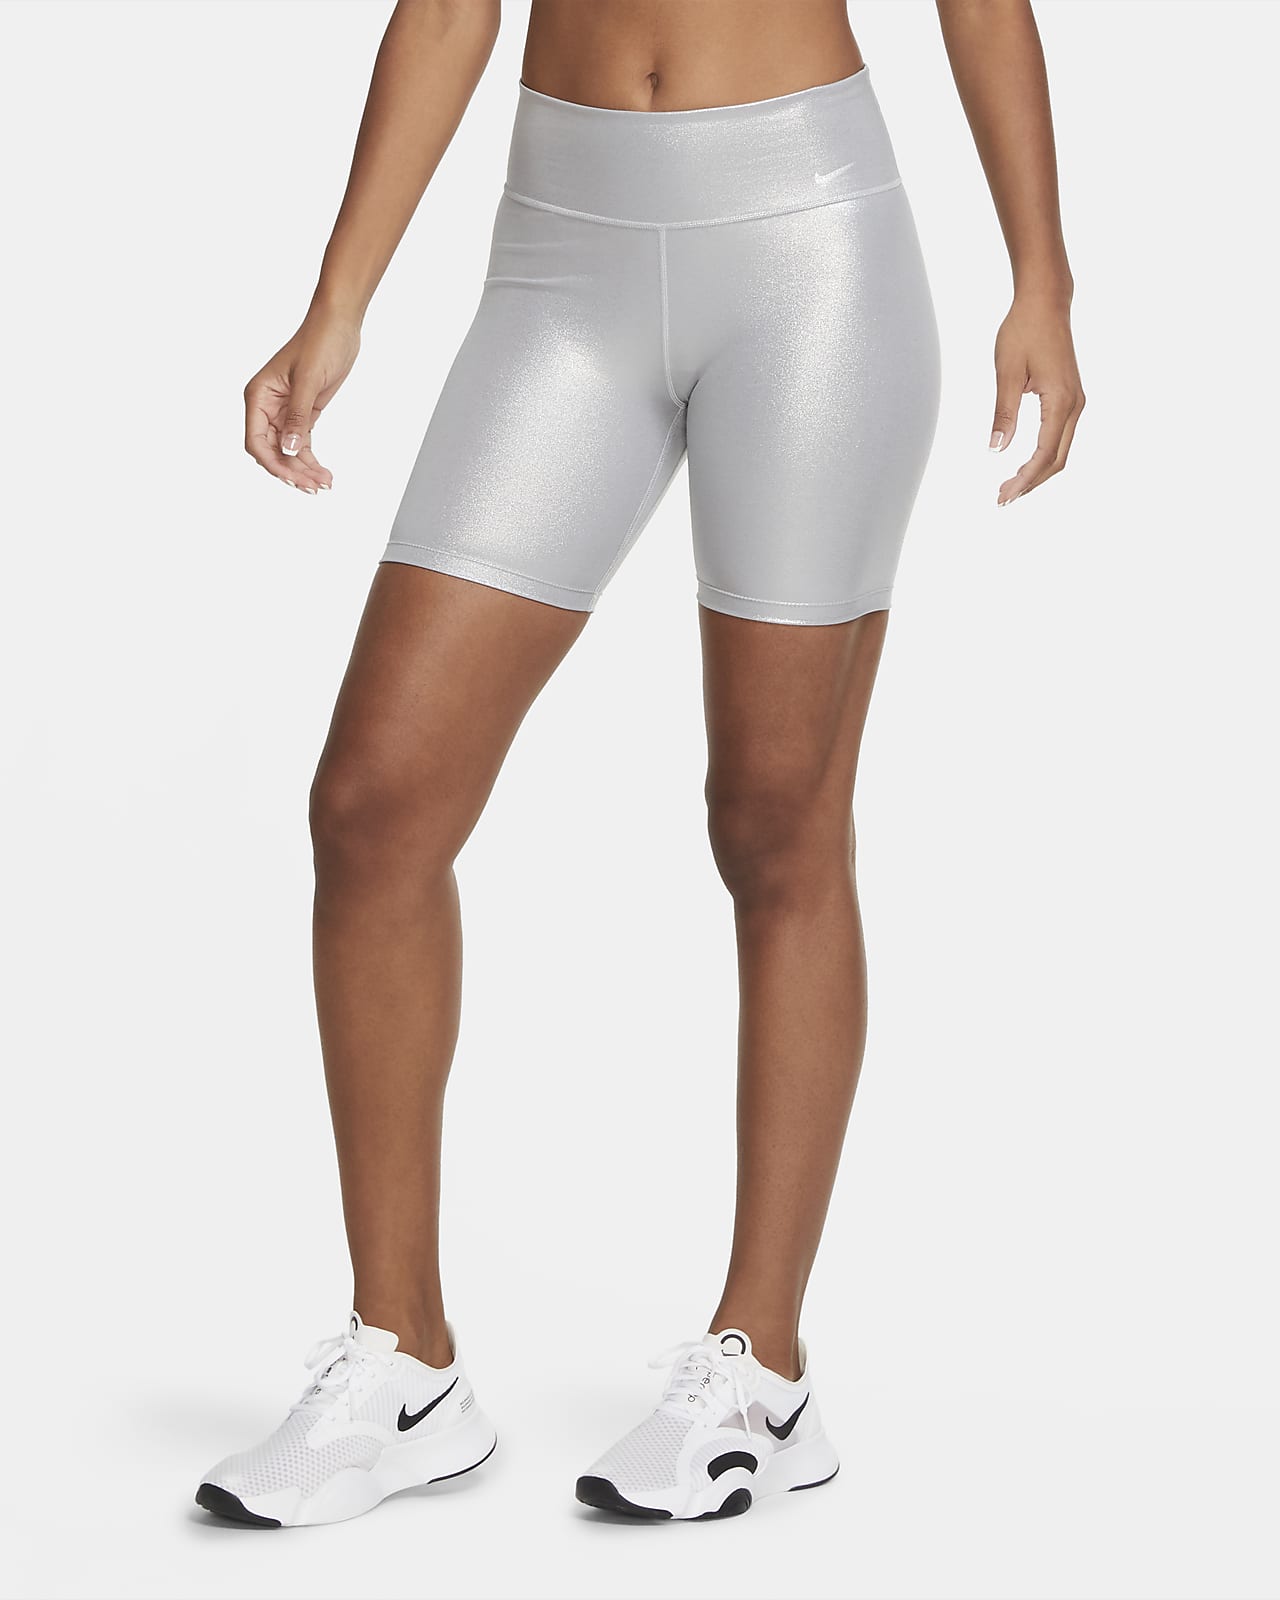 18cm (approx.) Bike Shorts. Nike SA